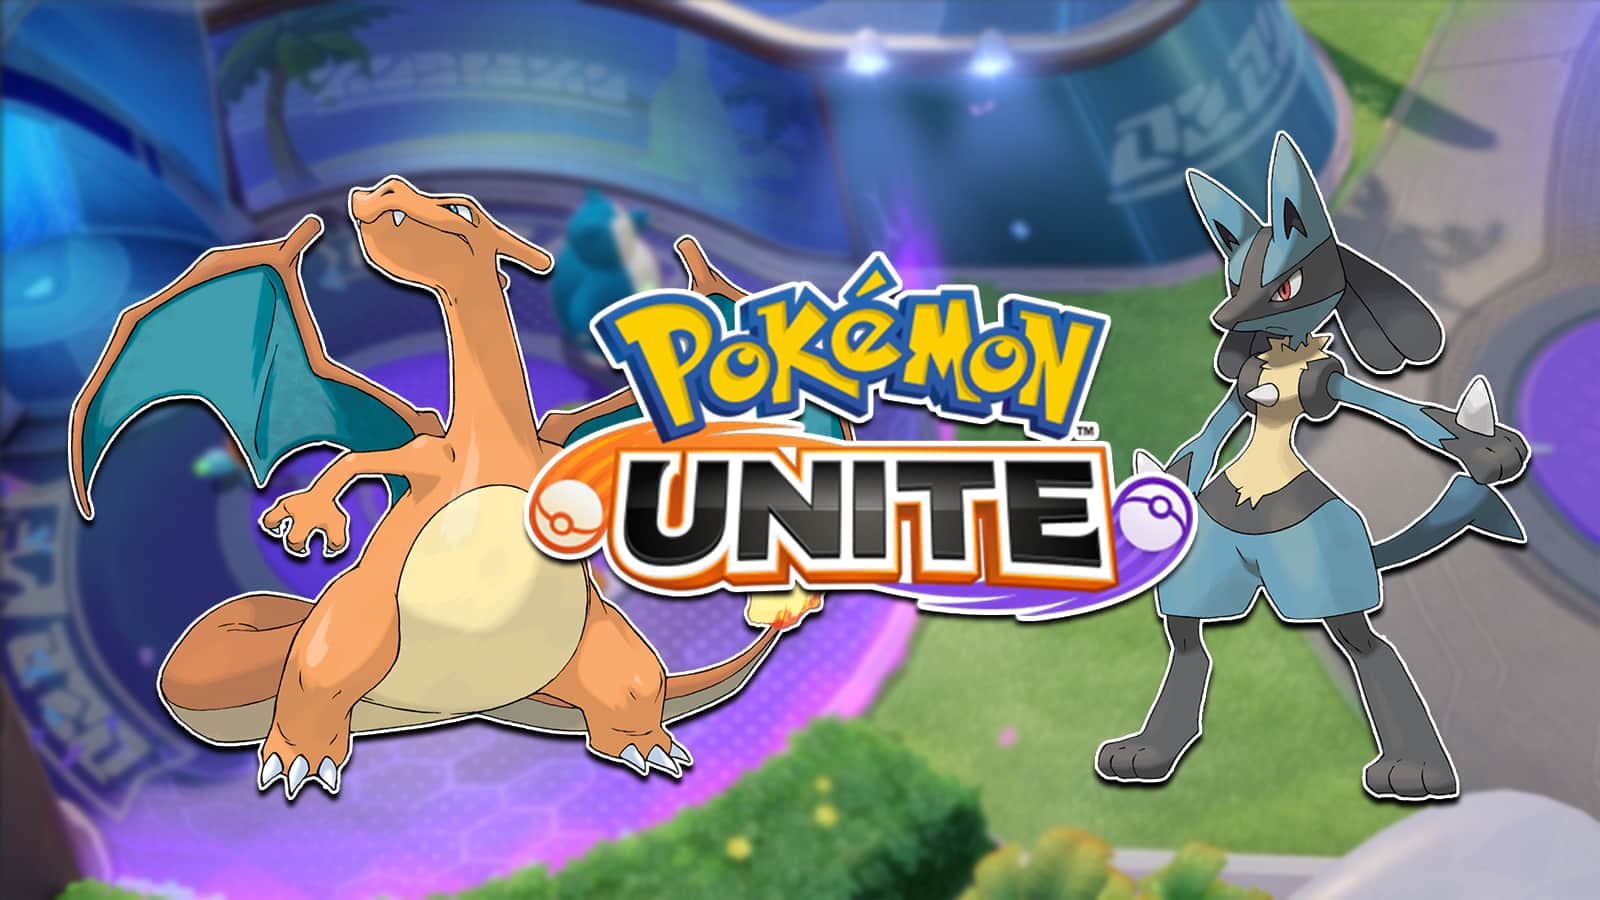 Charizard - Pokémon Unite